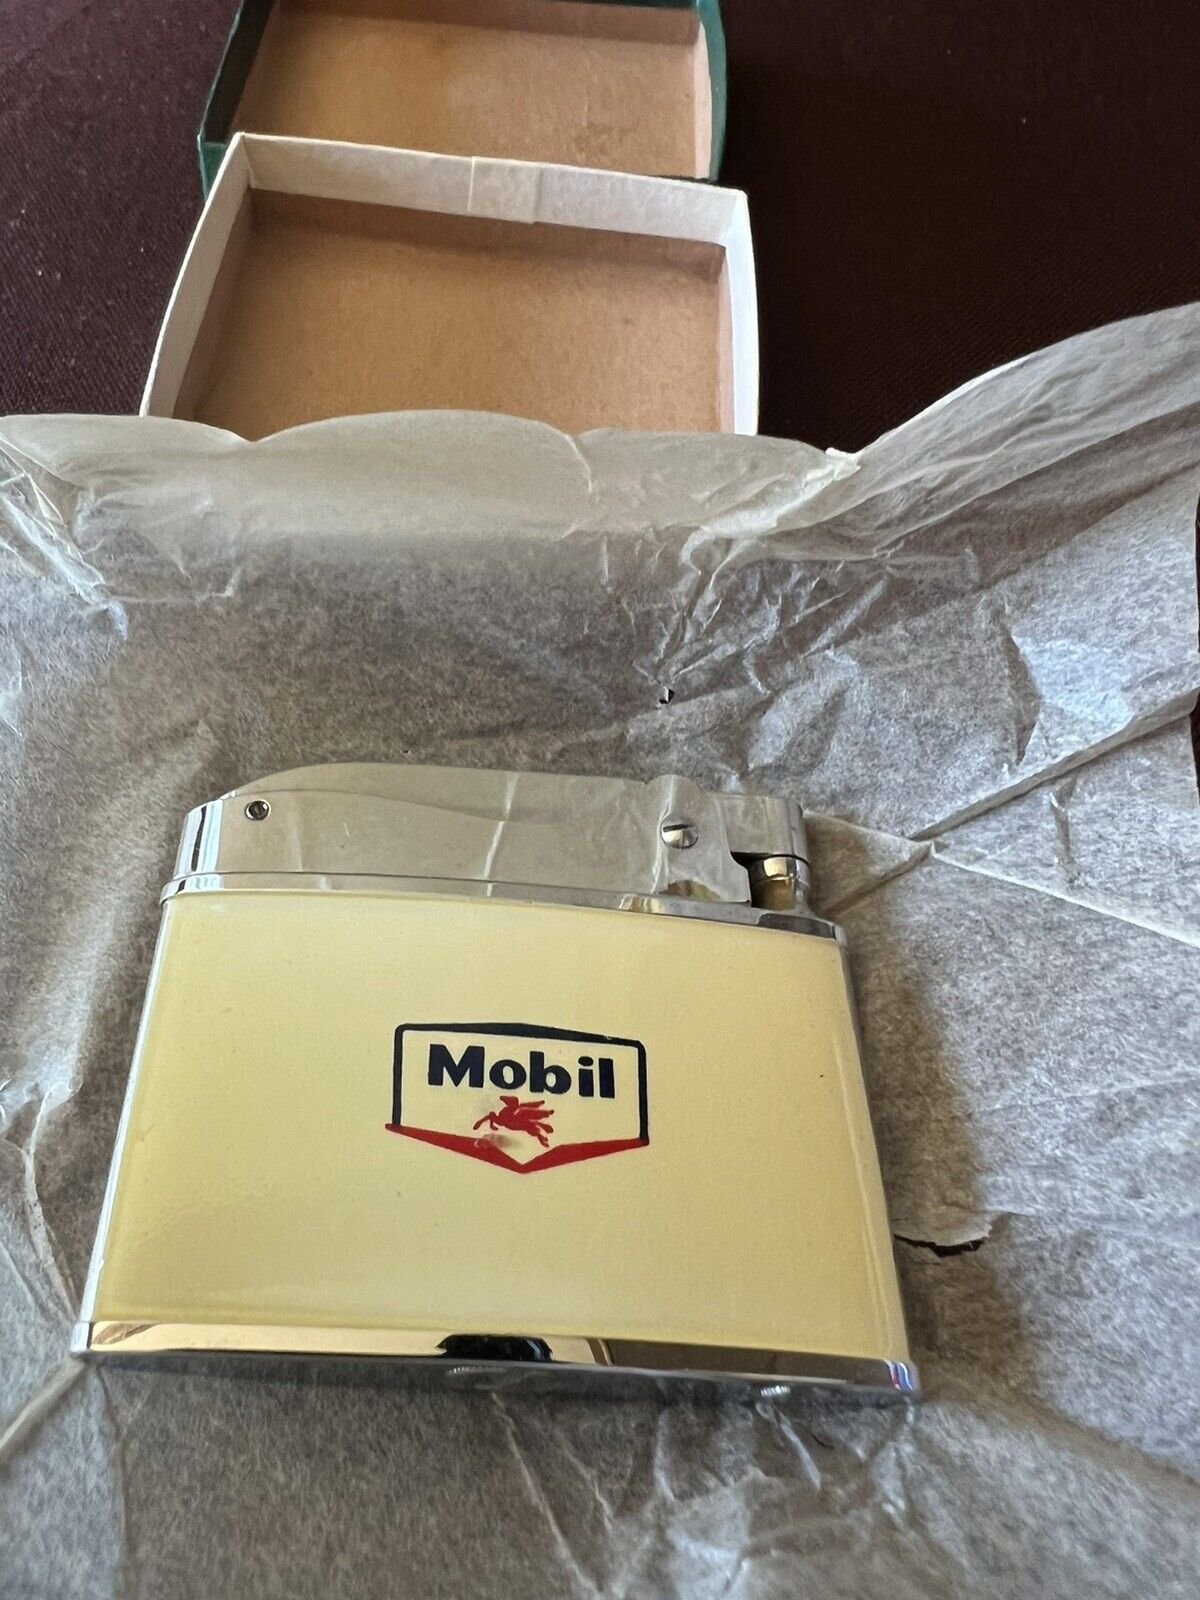 Vintage Mobil Oil Lighter - New Old Stock (NOS)